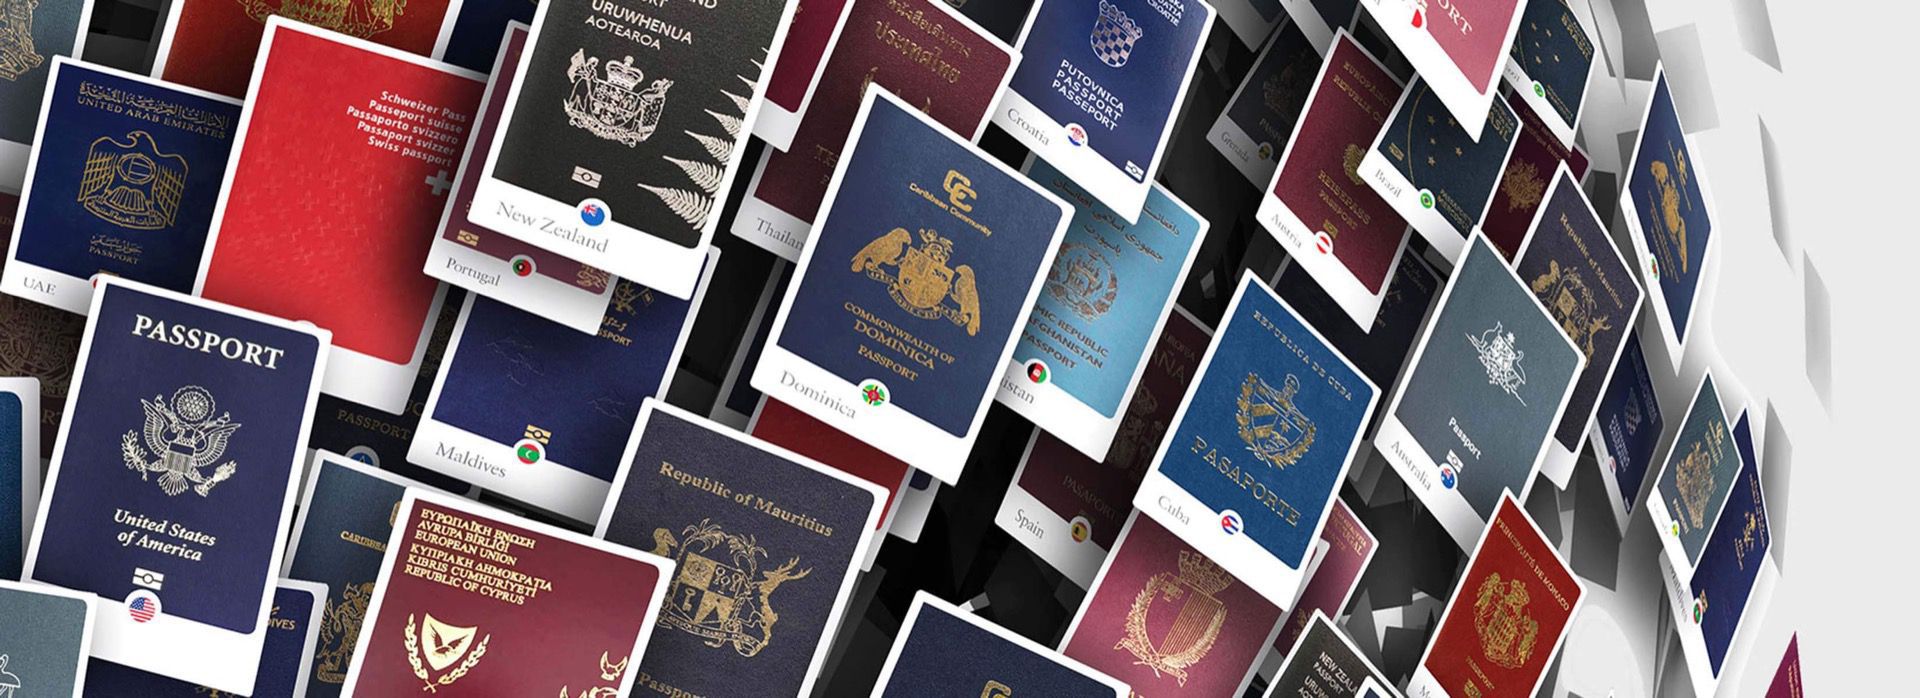 कुन देशको पासपोर्ट सबैभन्दा शक्तिशाली ?